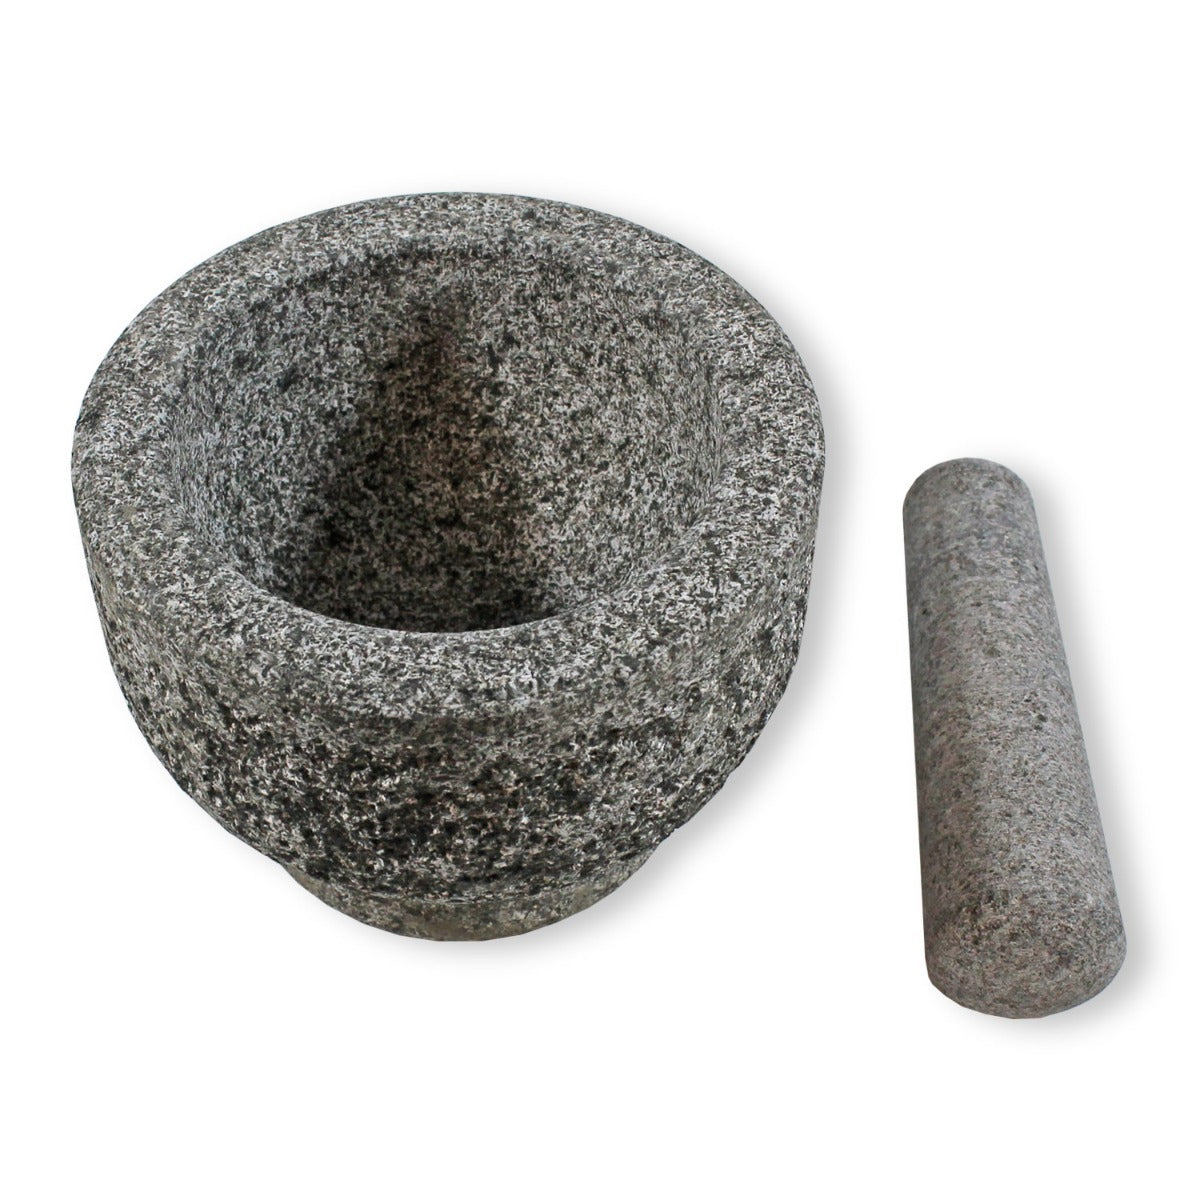 Granitmörser mit Stößel Zerkleinerer Gewürzmühle Granit Mörser